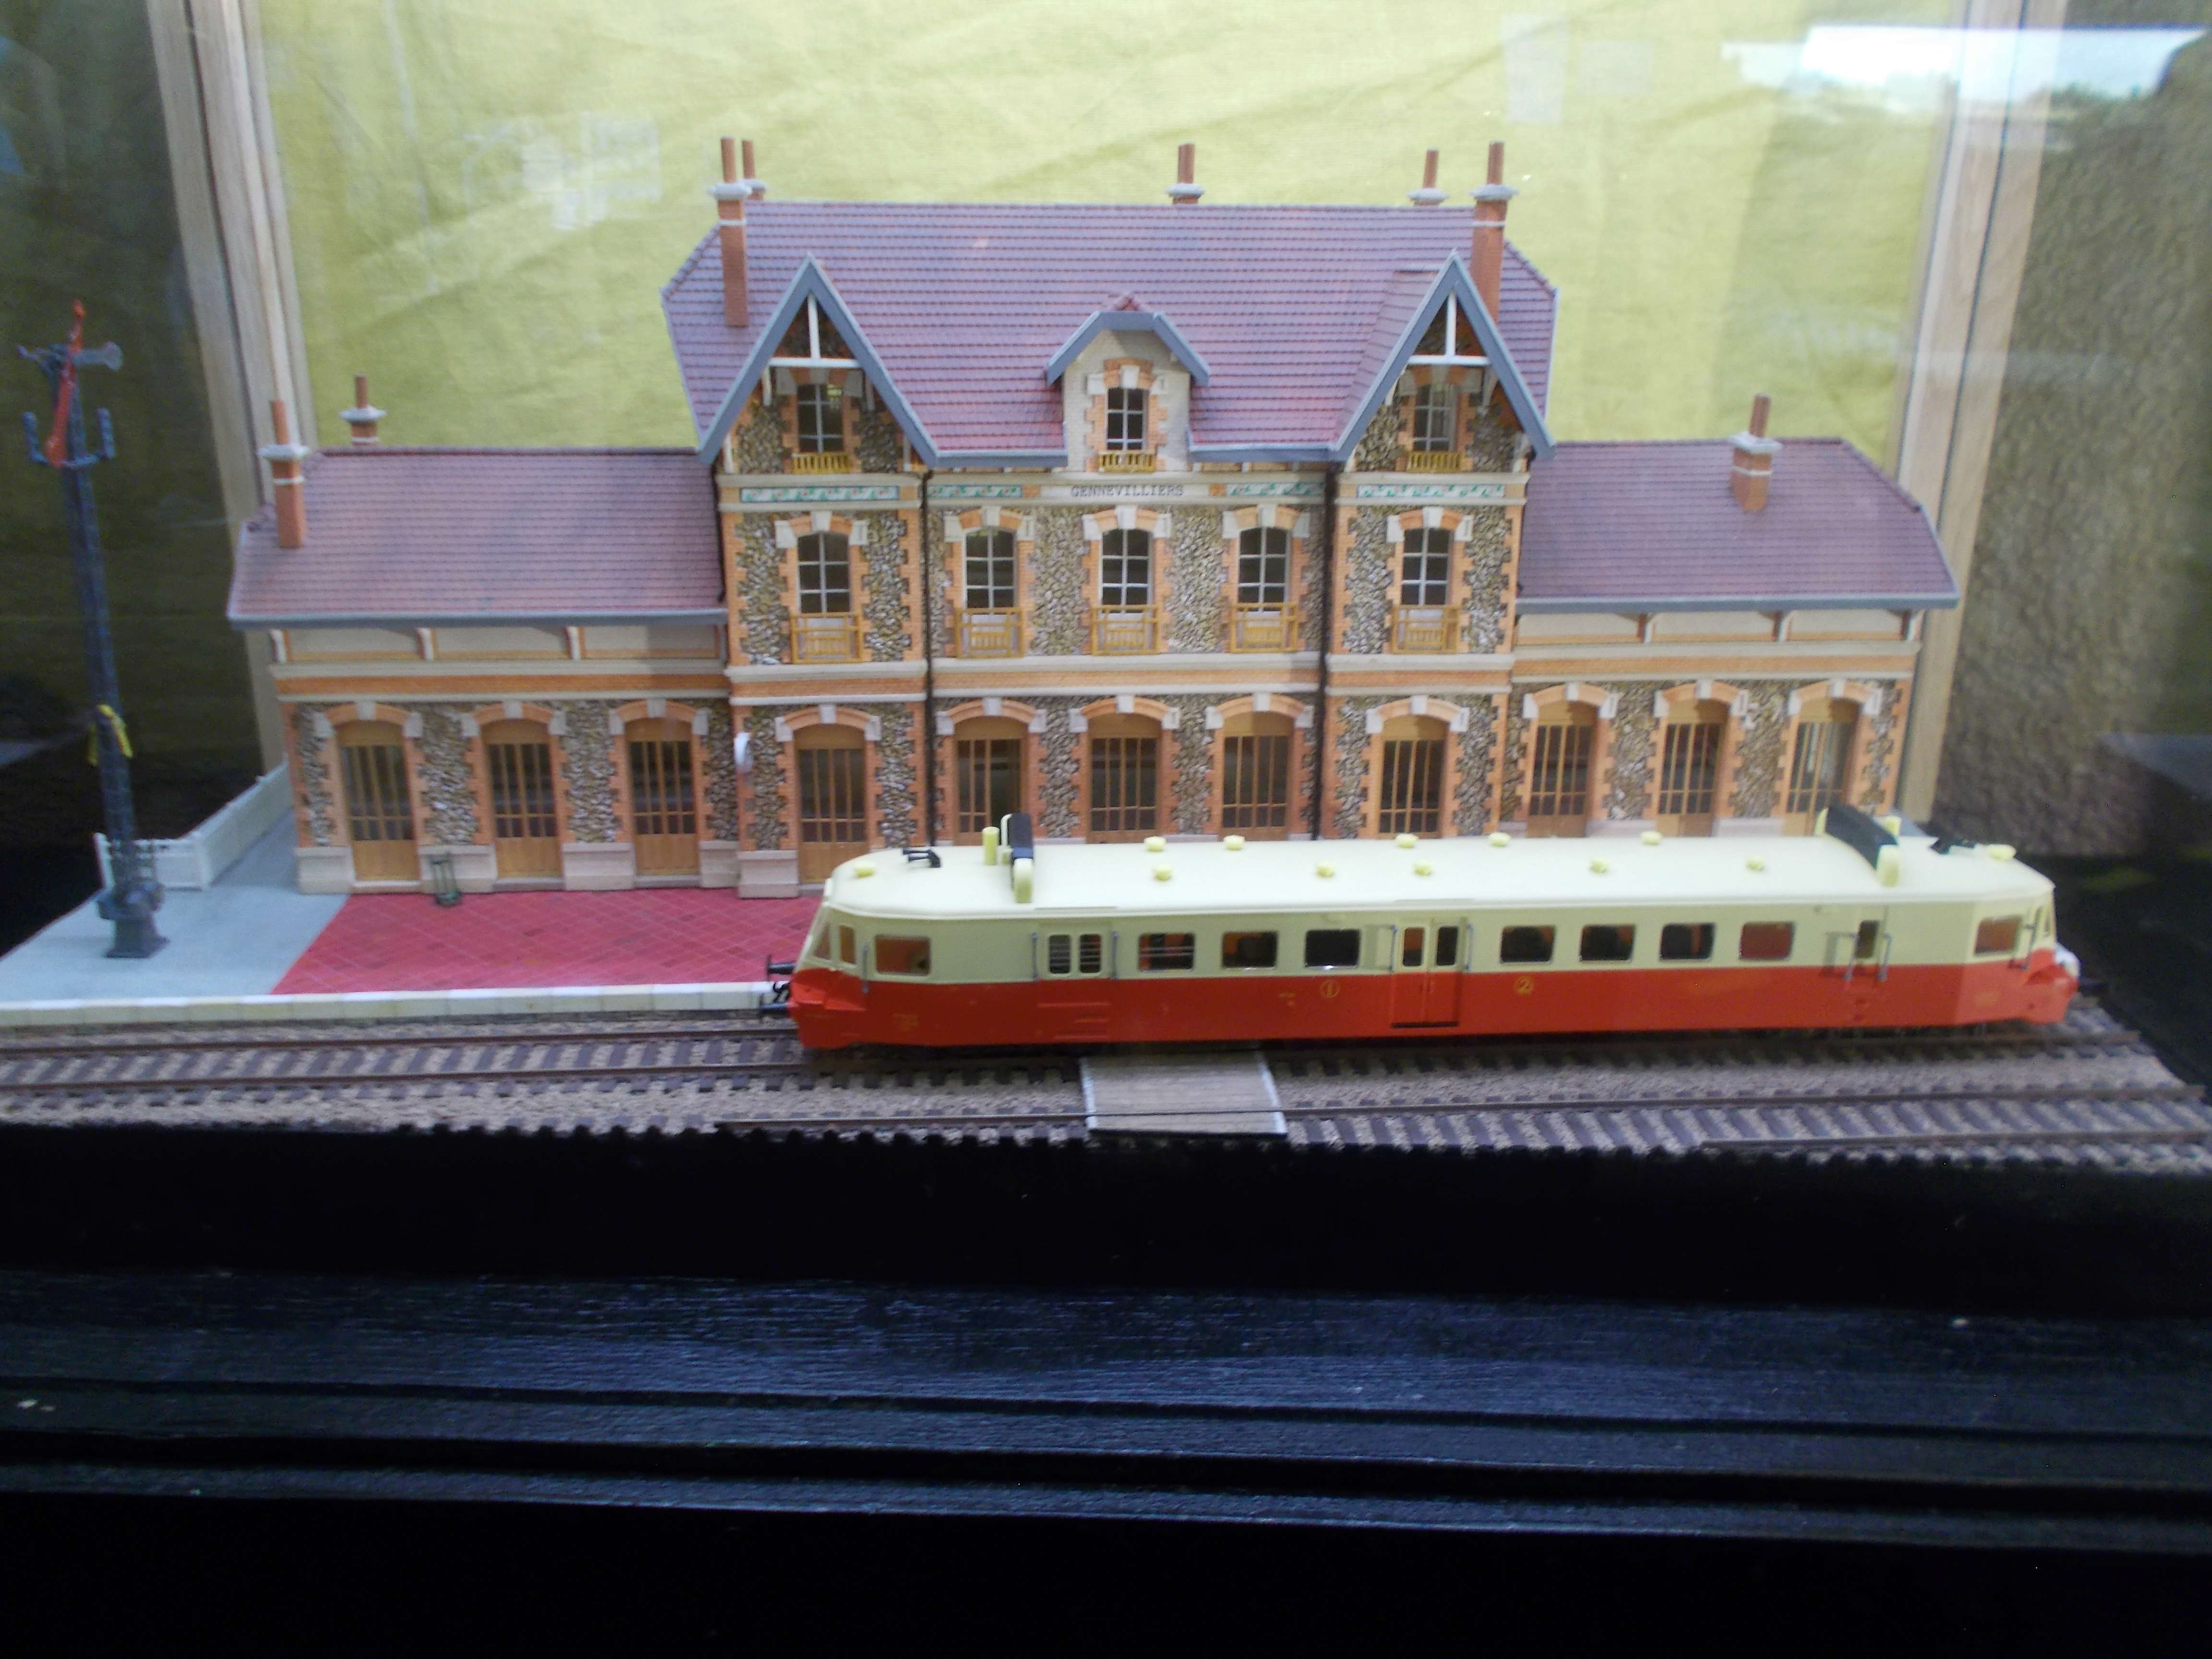  Exposition au Rail Miniature de la Boucle les 26 et 27 mai  Dscn5438